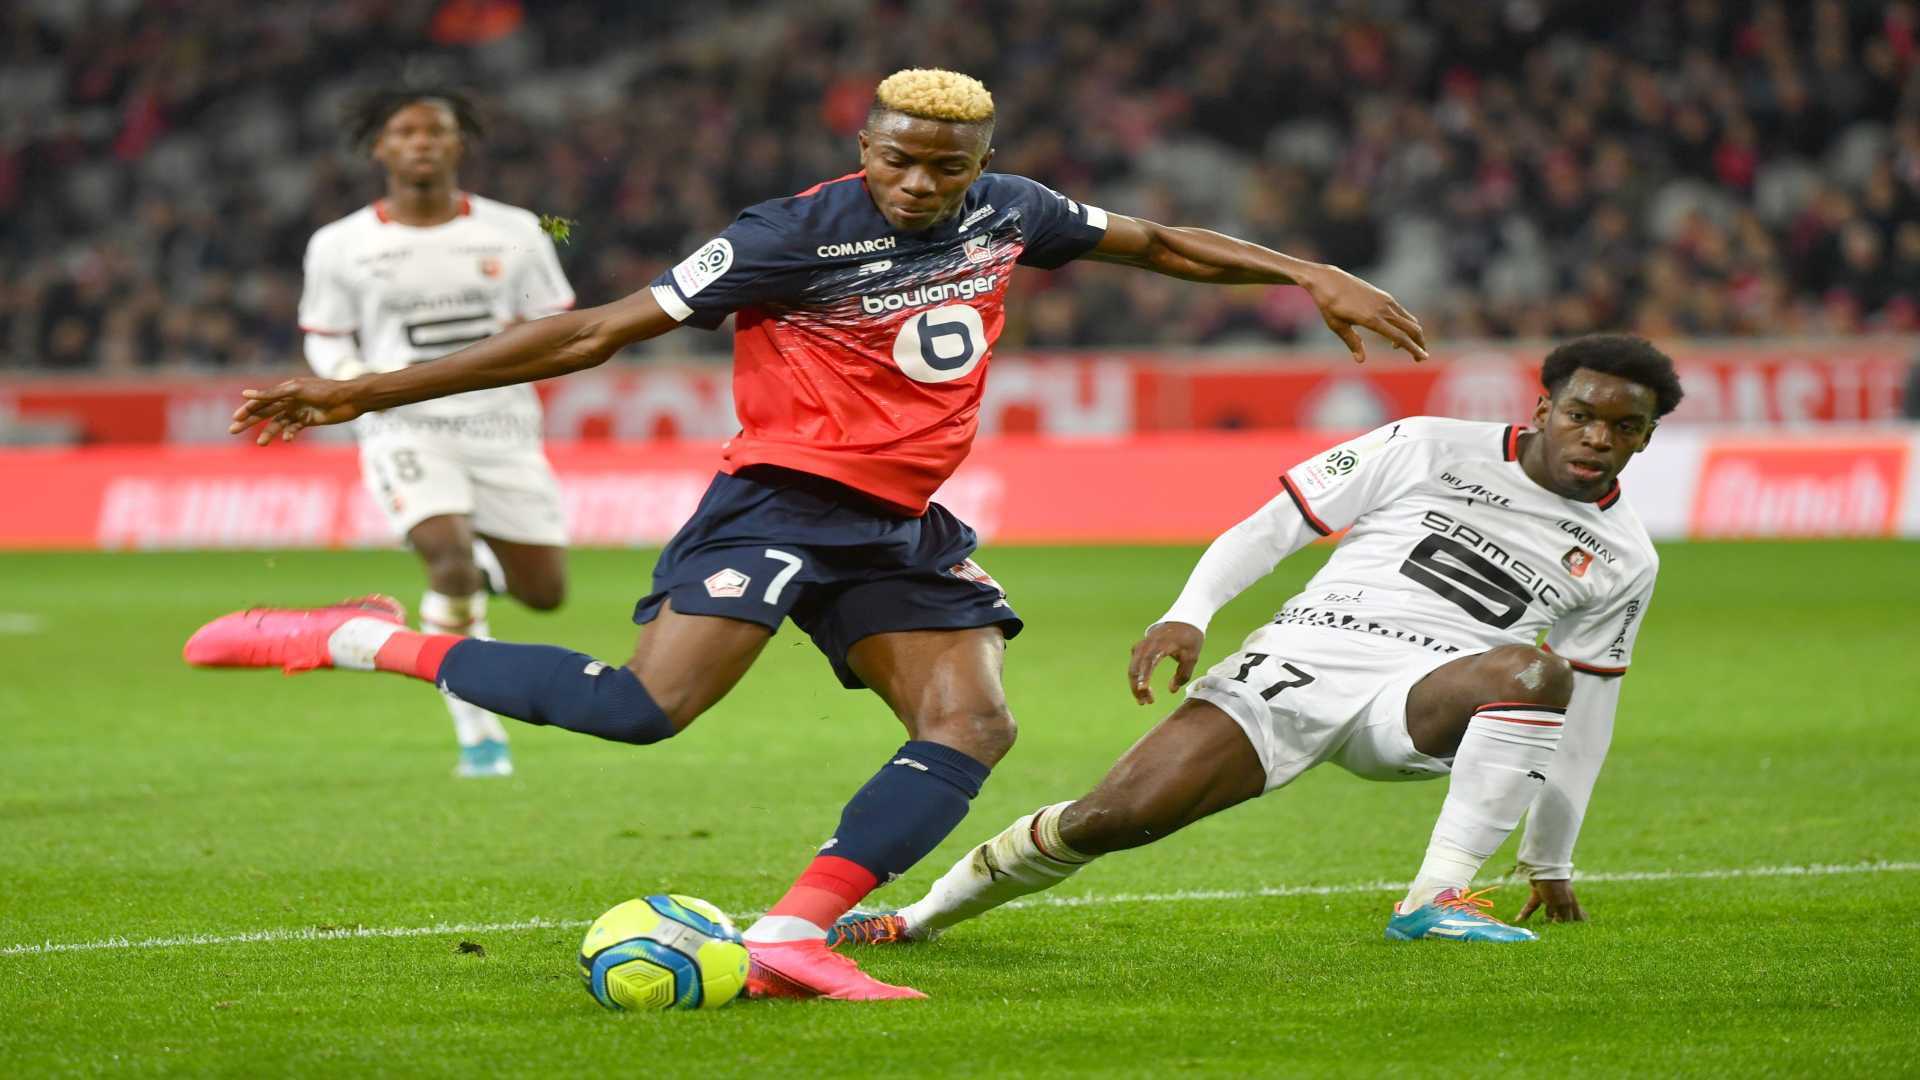 Coronavirus: ‘I miss doing my job’ - Lille star Osimhen eager for Ligue 1 return